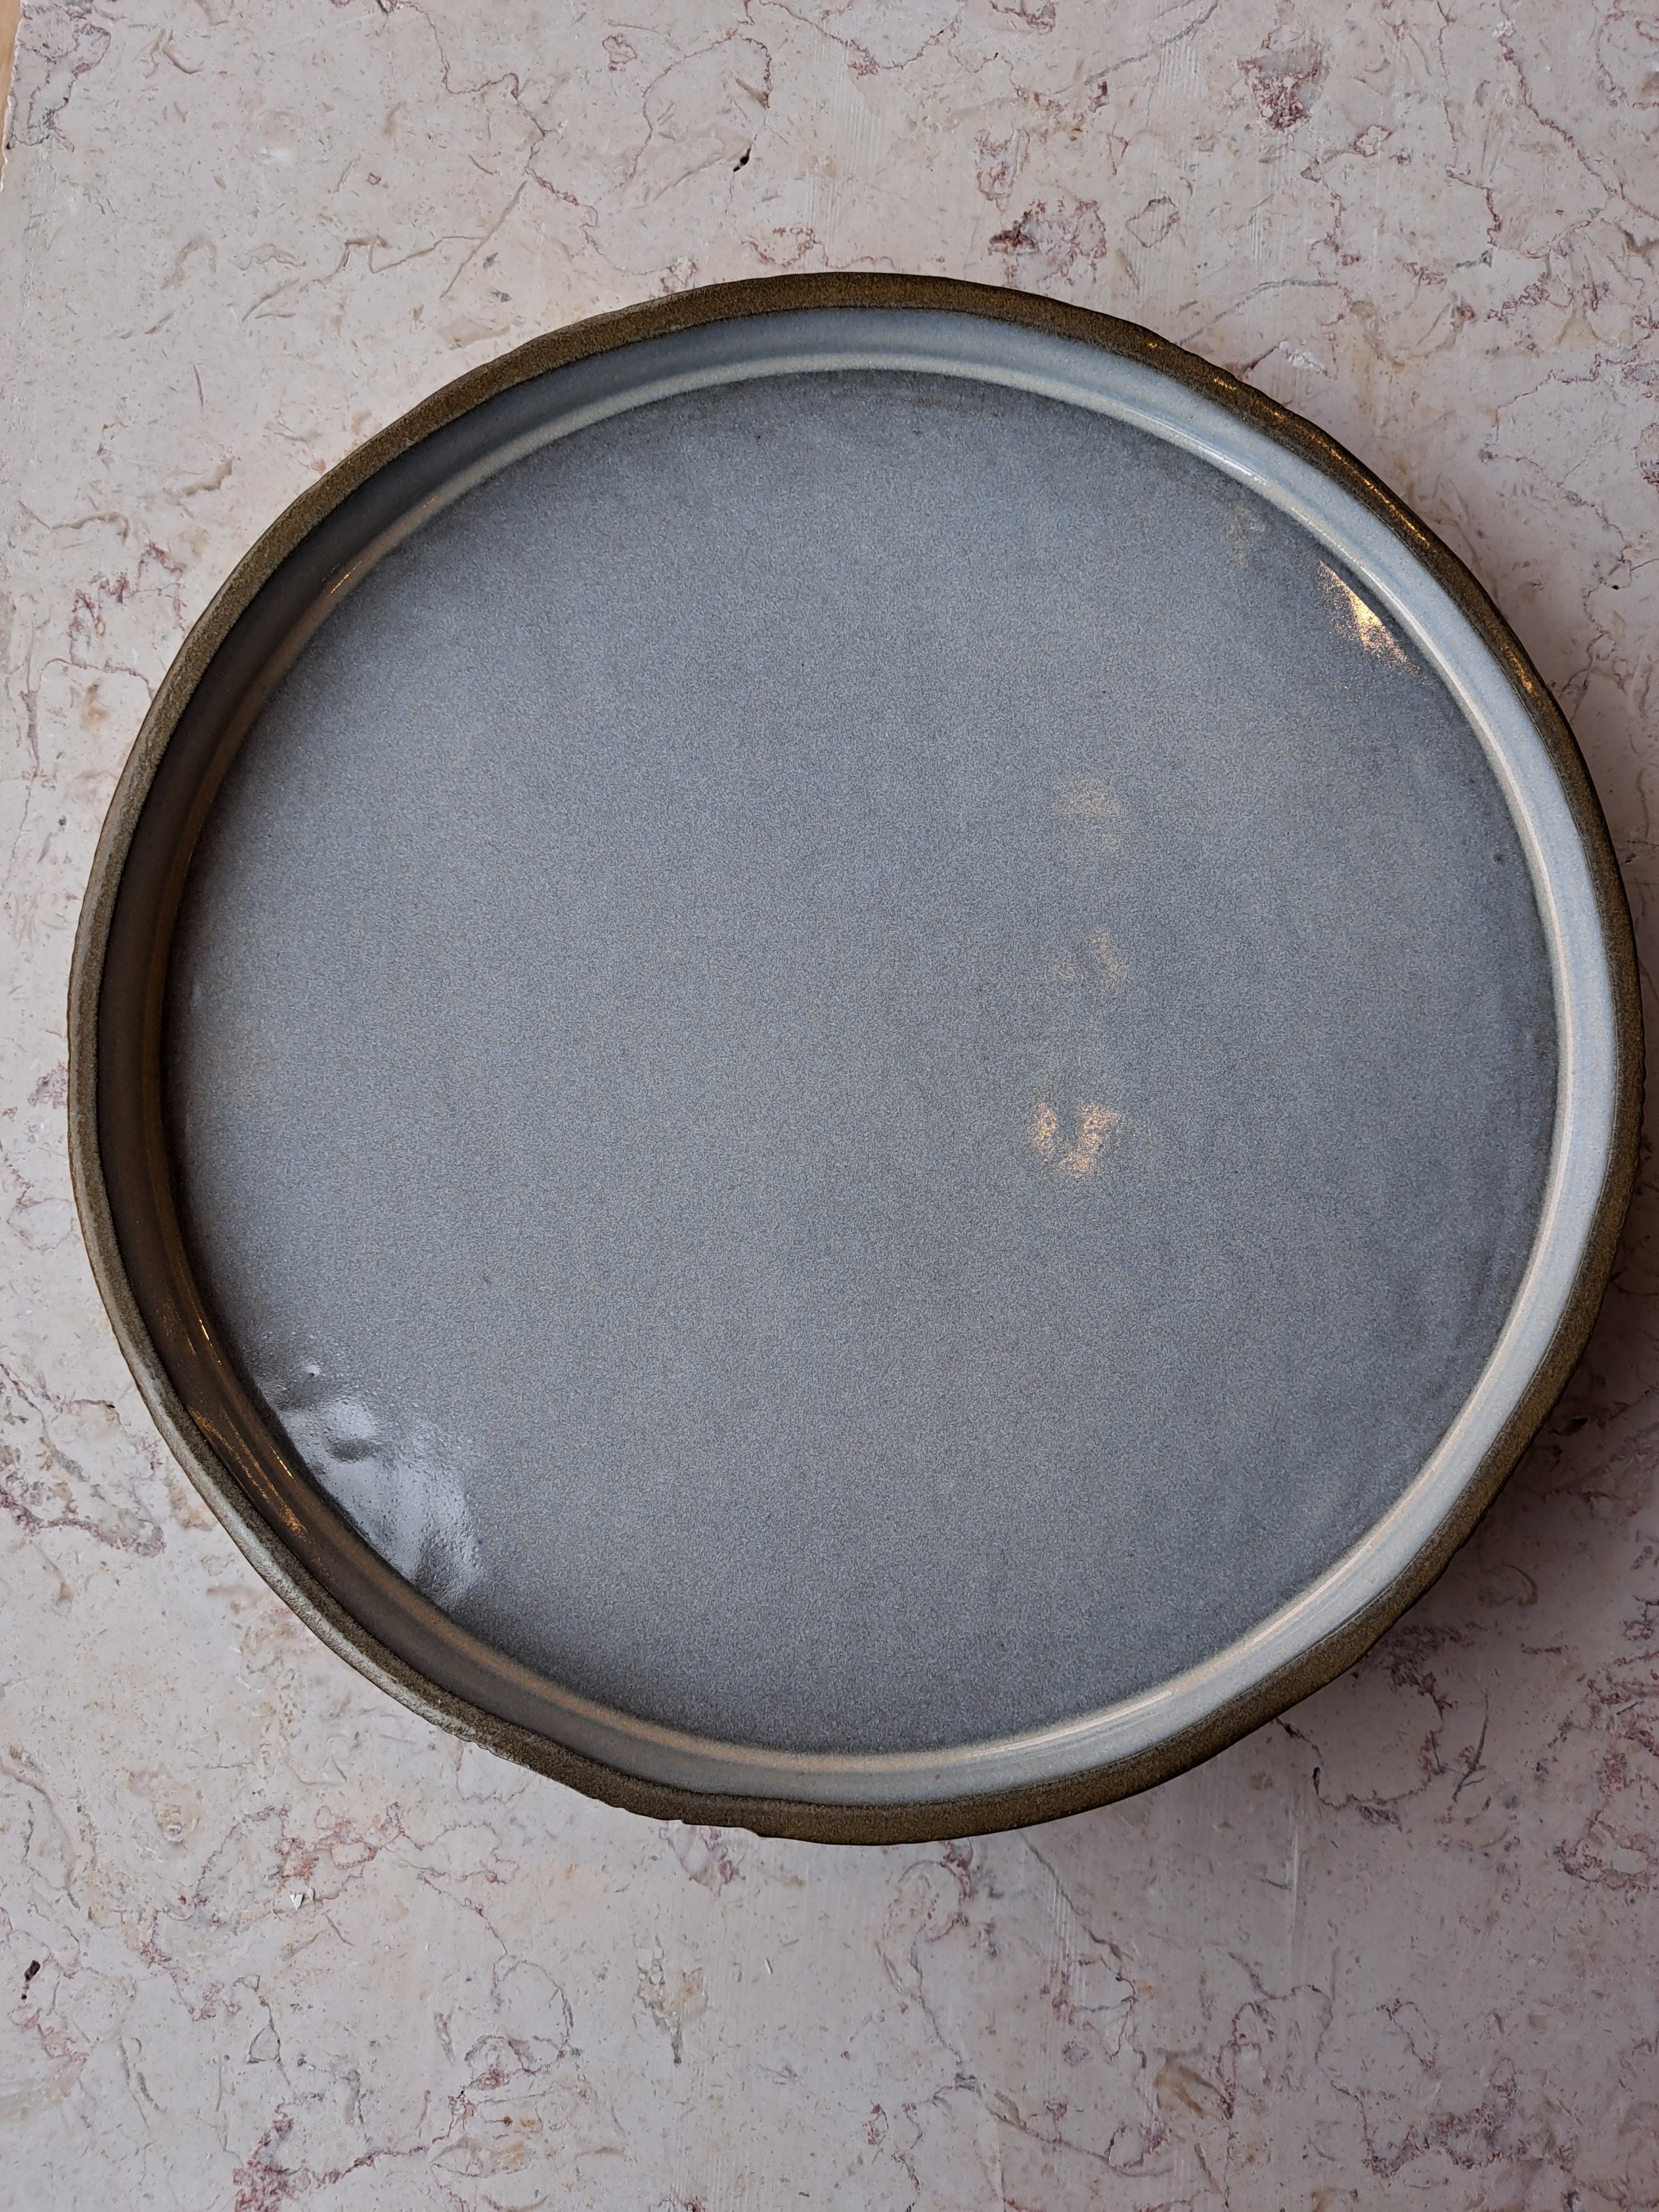 marienguyen-ceramiste-vaiselle-asiette-ceramique-grise